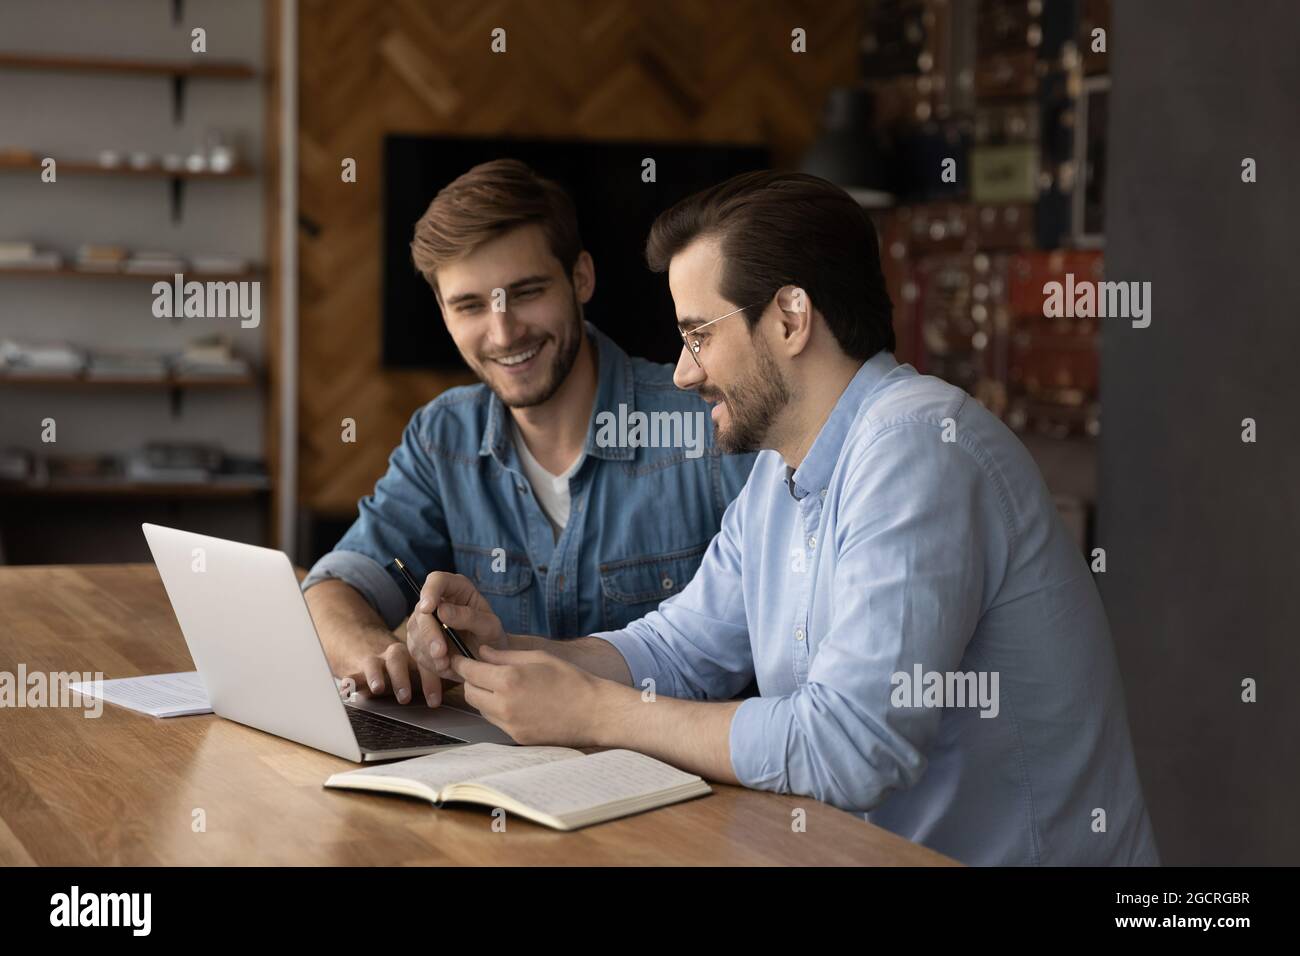 Glückliche männliche Kollegen, die sich einen Laptop teilen und über das Projekt sprechen Stockfoto